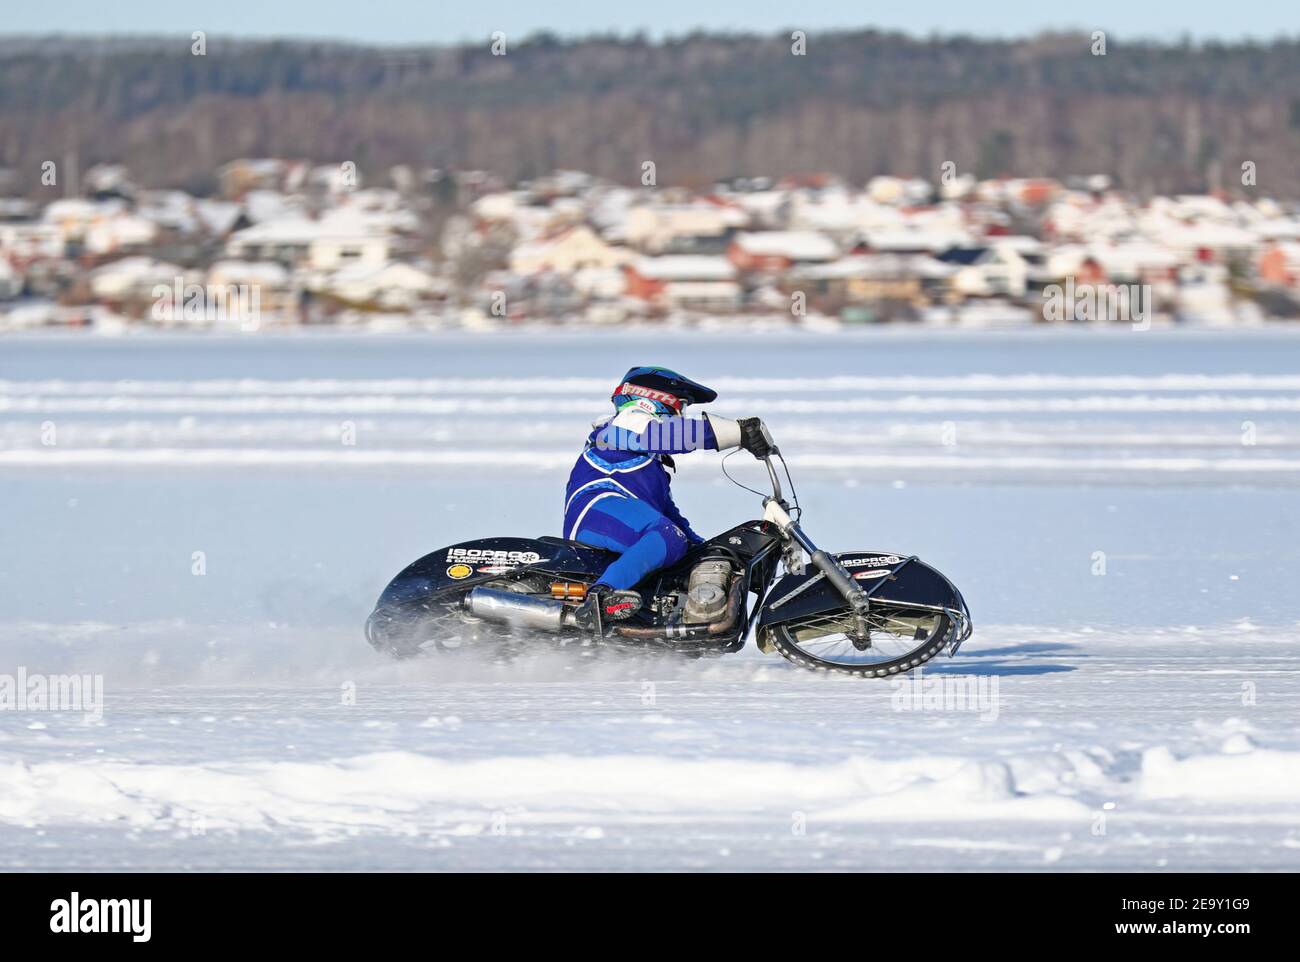 MOTALA, SCHWEDEN- 6. FEBRUAR 2021: Eisschnellweg in Knäppaviken am Borensee am kalten Samstag. Stockfoto